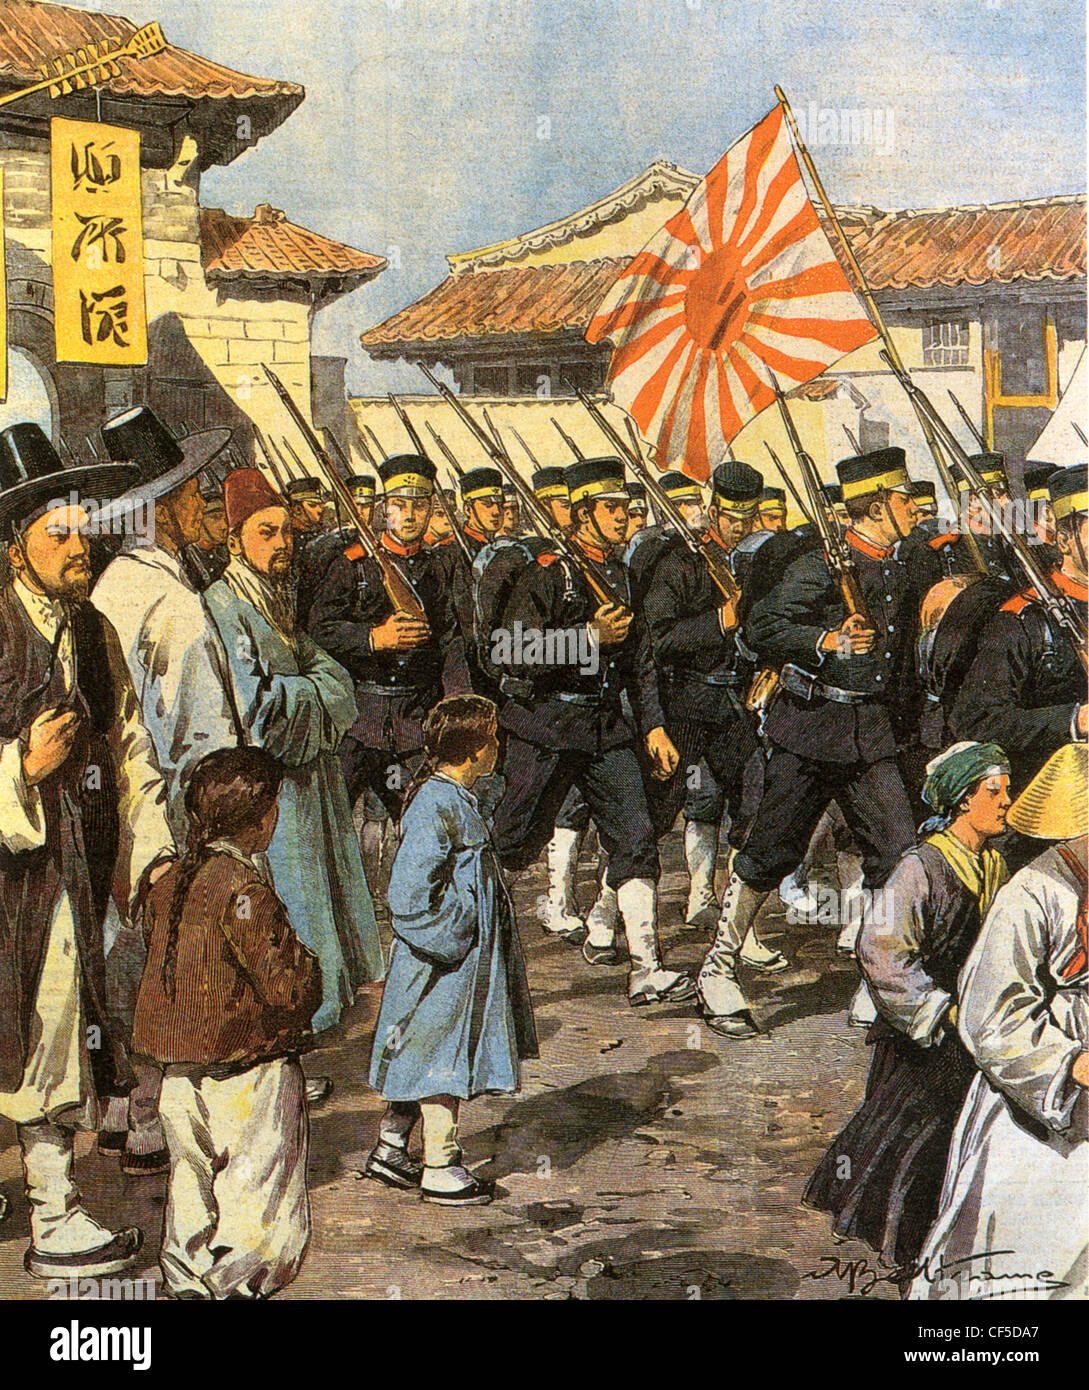 RUSSO-japanischer Krieg - Truppen japanische Marine Land in Korea im Jahre 1904 Stockfoto